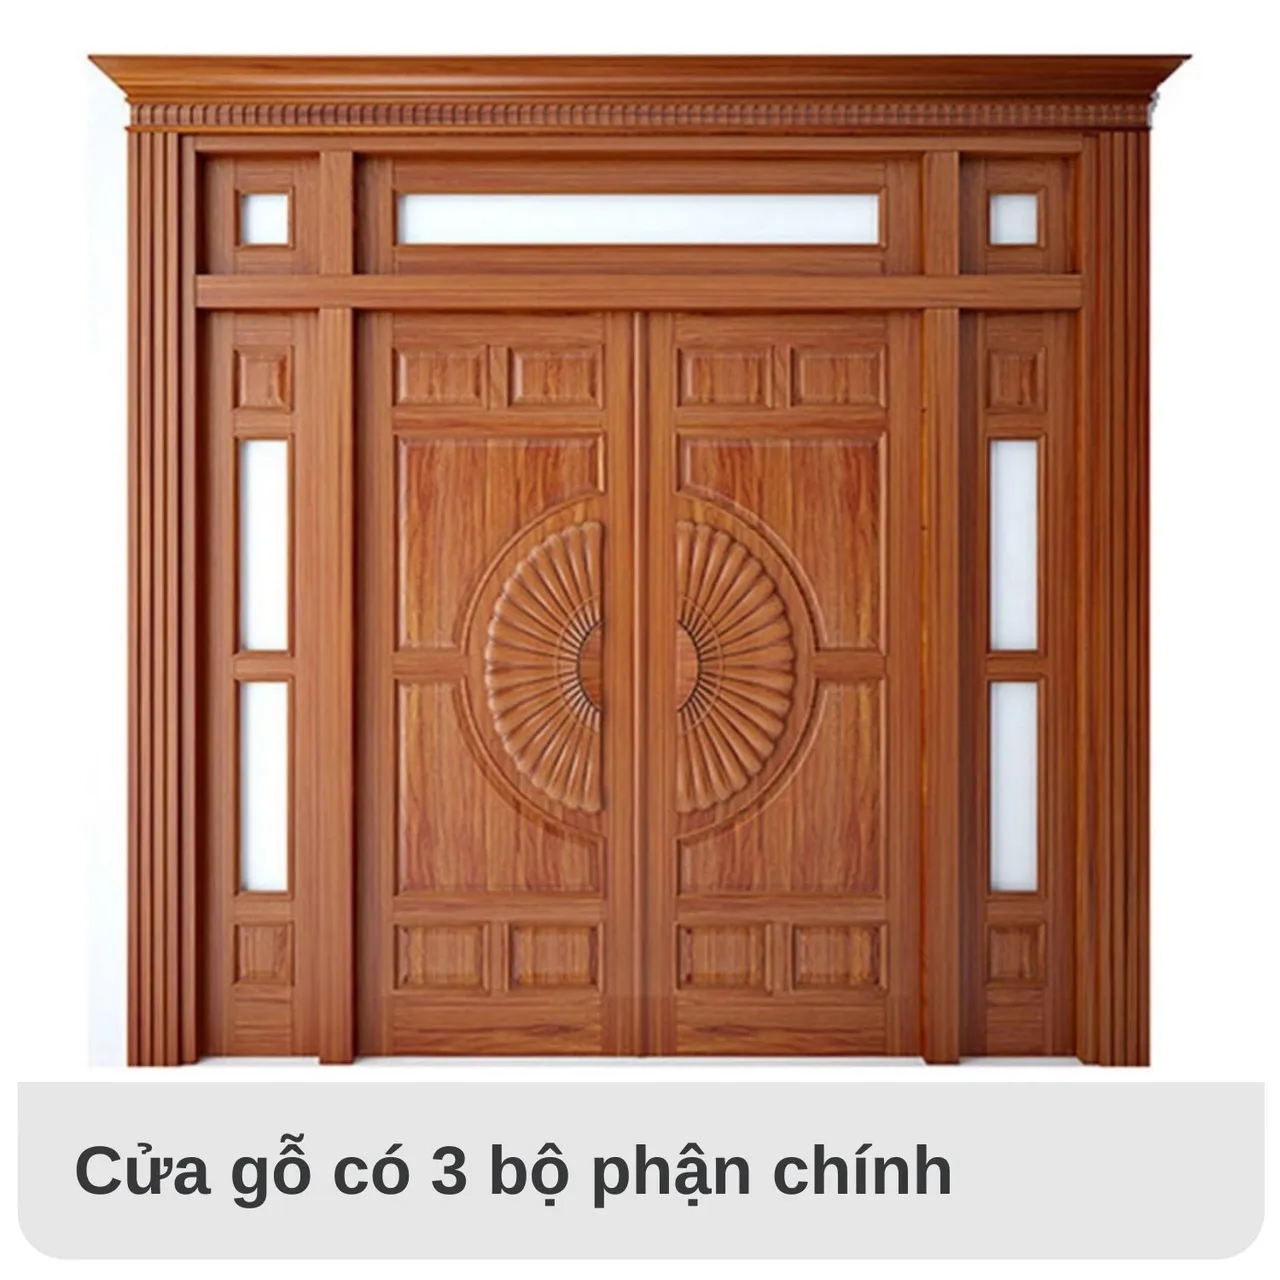 Một chiếc cửa gỗ thường gồm có 3 bộ phận chính